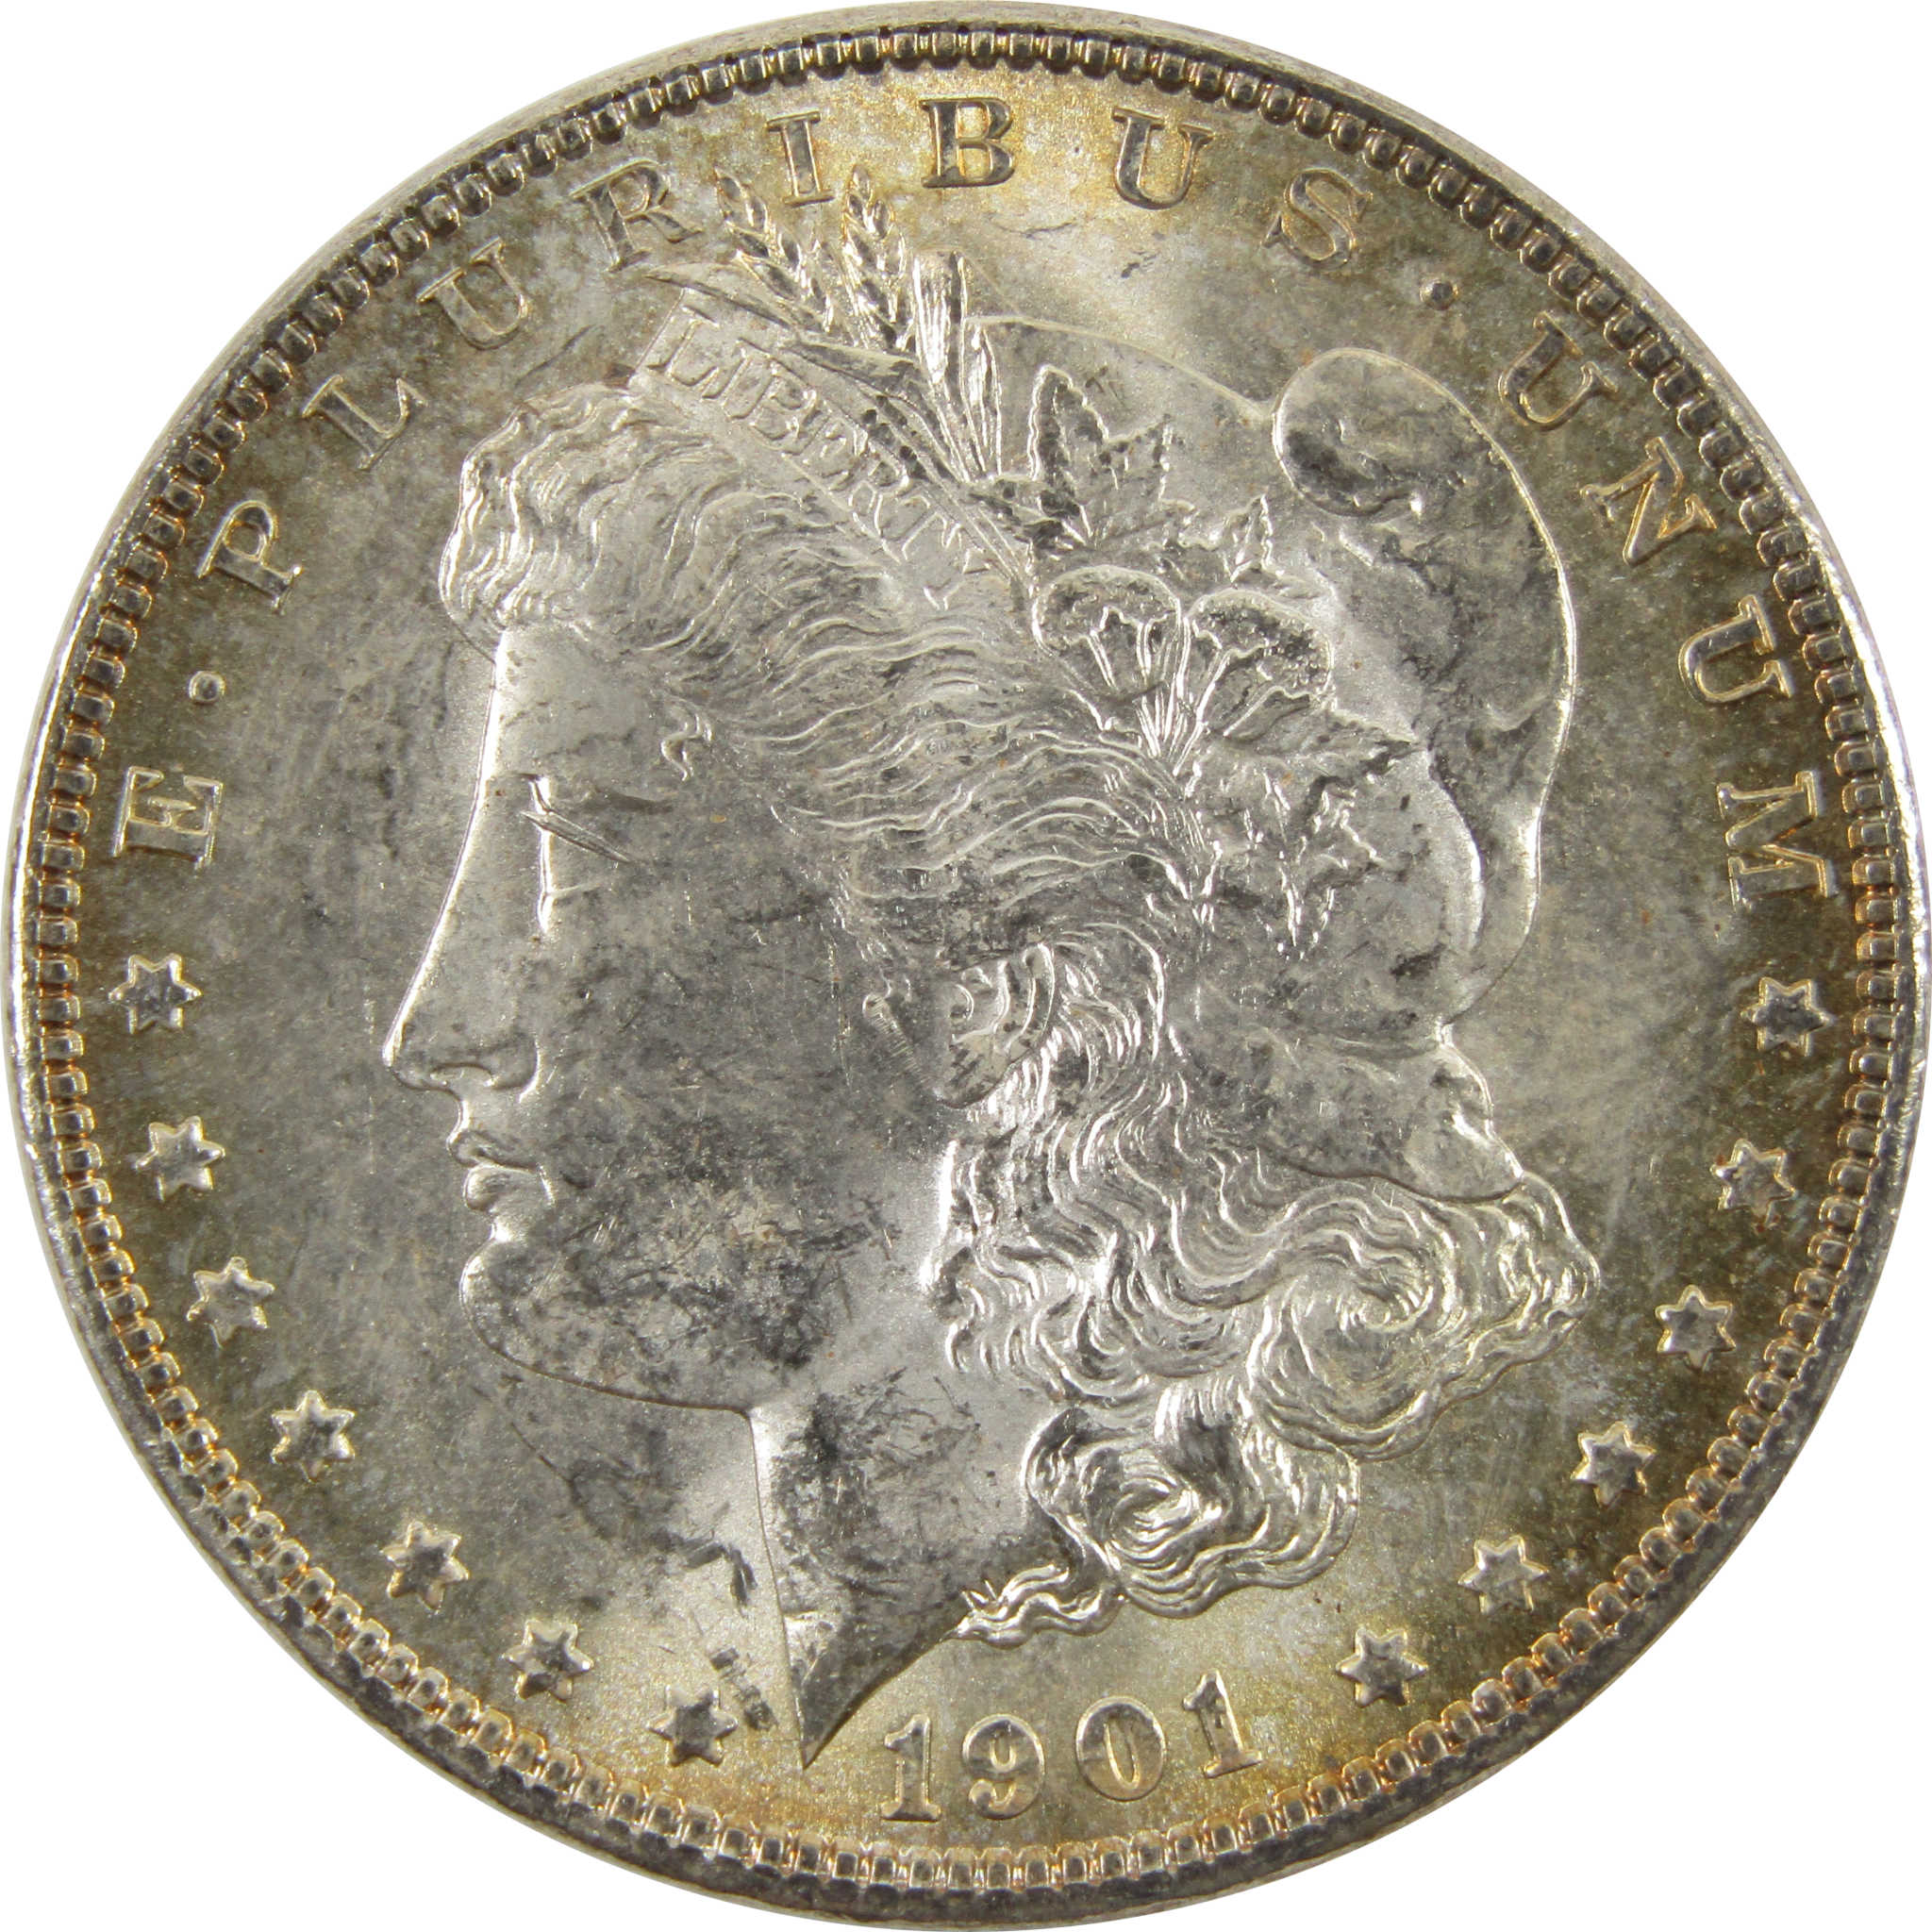 1901 O Morgan Dollar BU Uncirculated 90% Silver $1 Coin SKU:I10472 - Morgan coin - Morgan silver dollar - Morgan silver dollar for sale - Profile Coins &amp; Collectibles